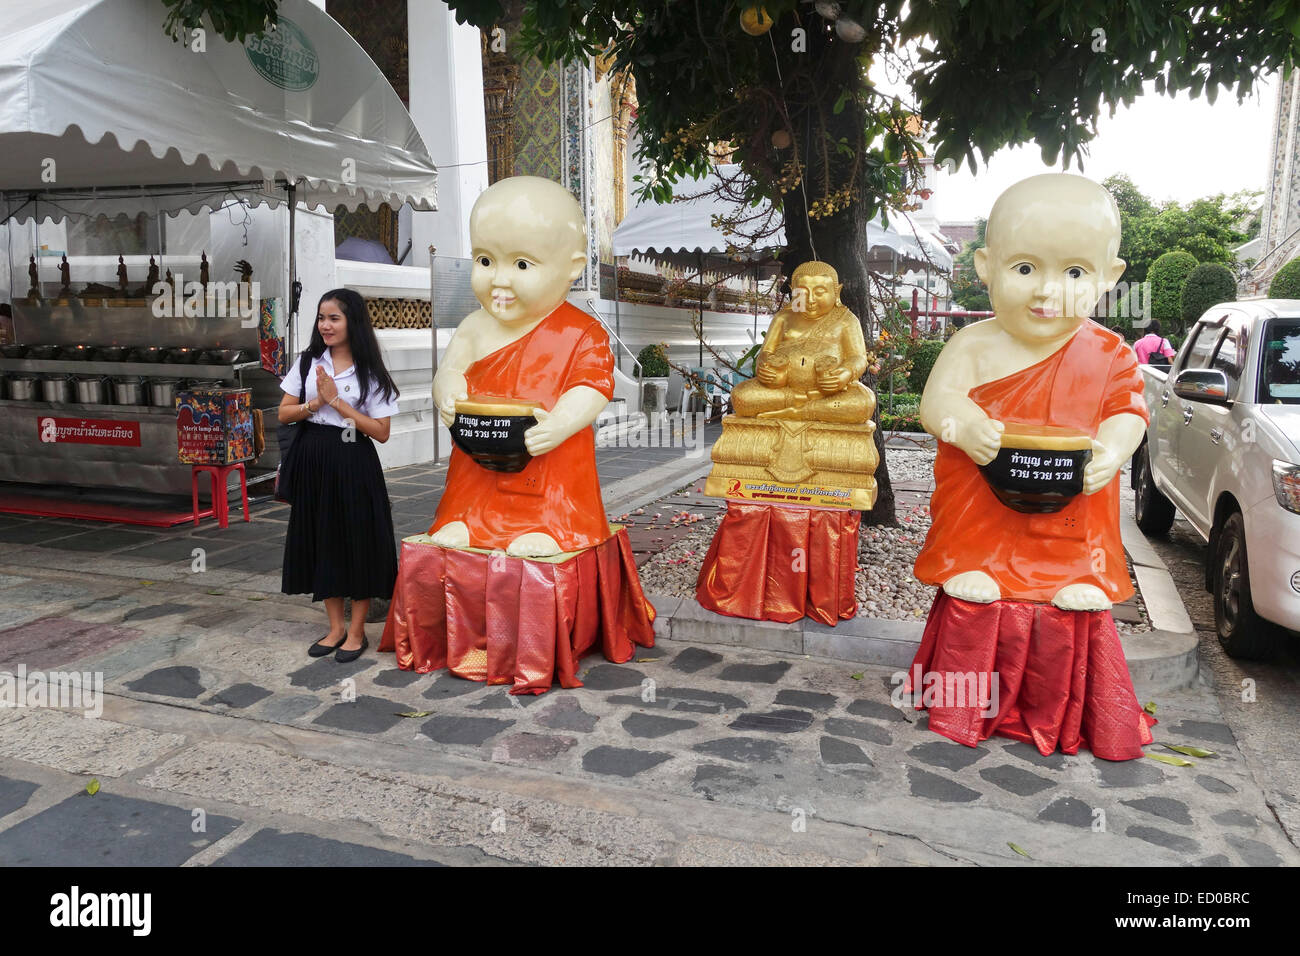 Ragazza a Wat Arun, il tempio dell'alba, tempio buddista. Thonburi. Bangkok, Tailandia. Foto Stock